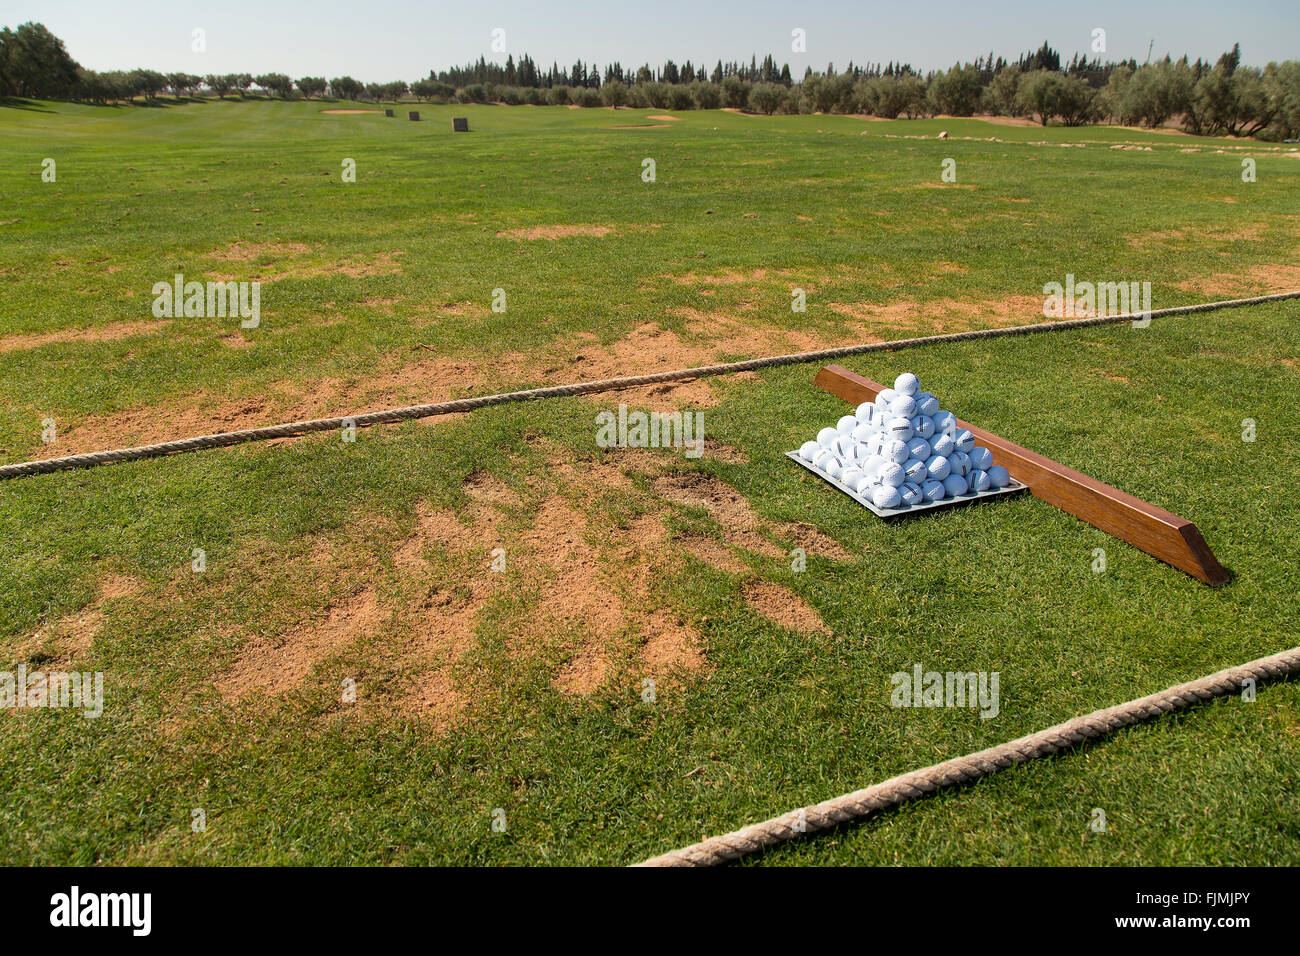 Golf driving Range mit Pyramide der Kugeln Abschlag Divots und bereit zu üben Stockfoto